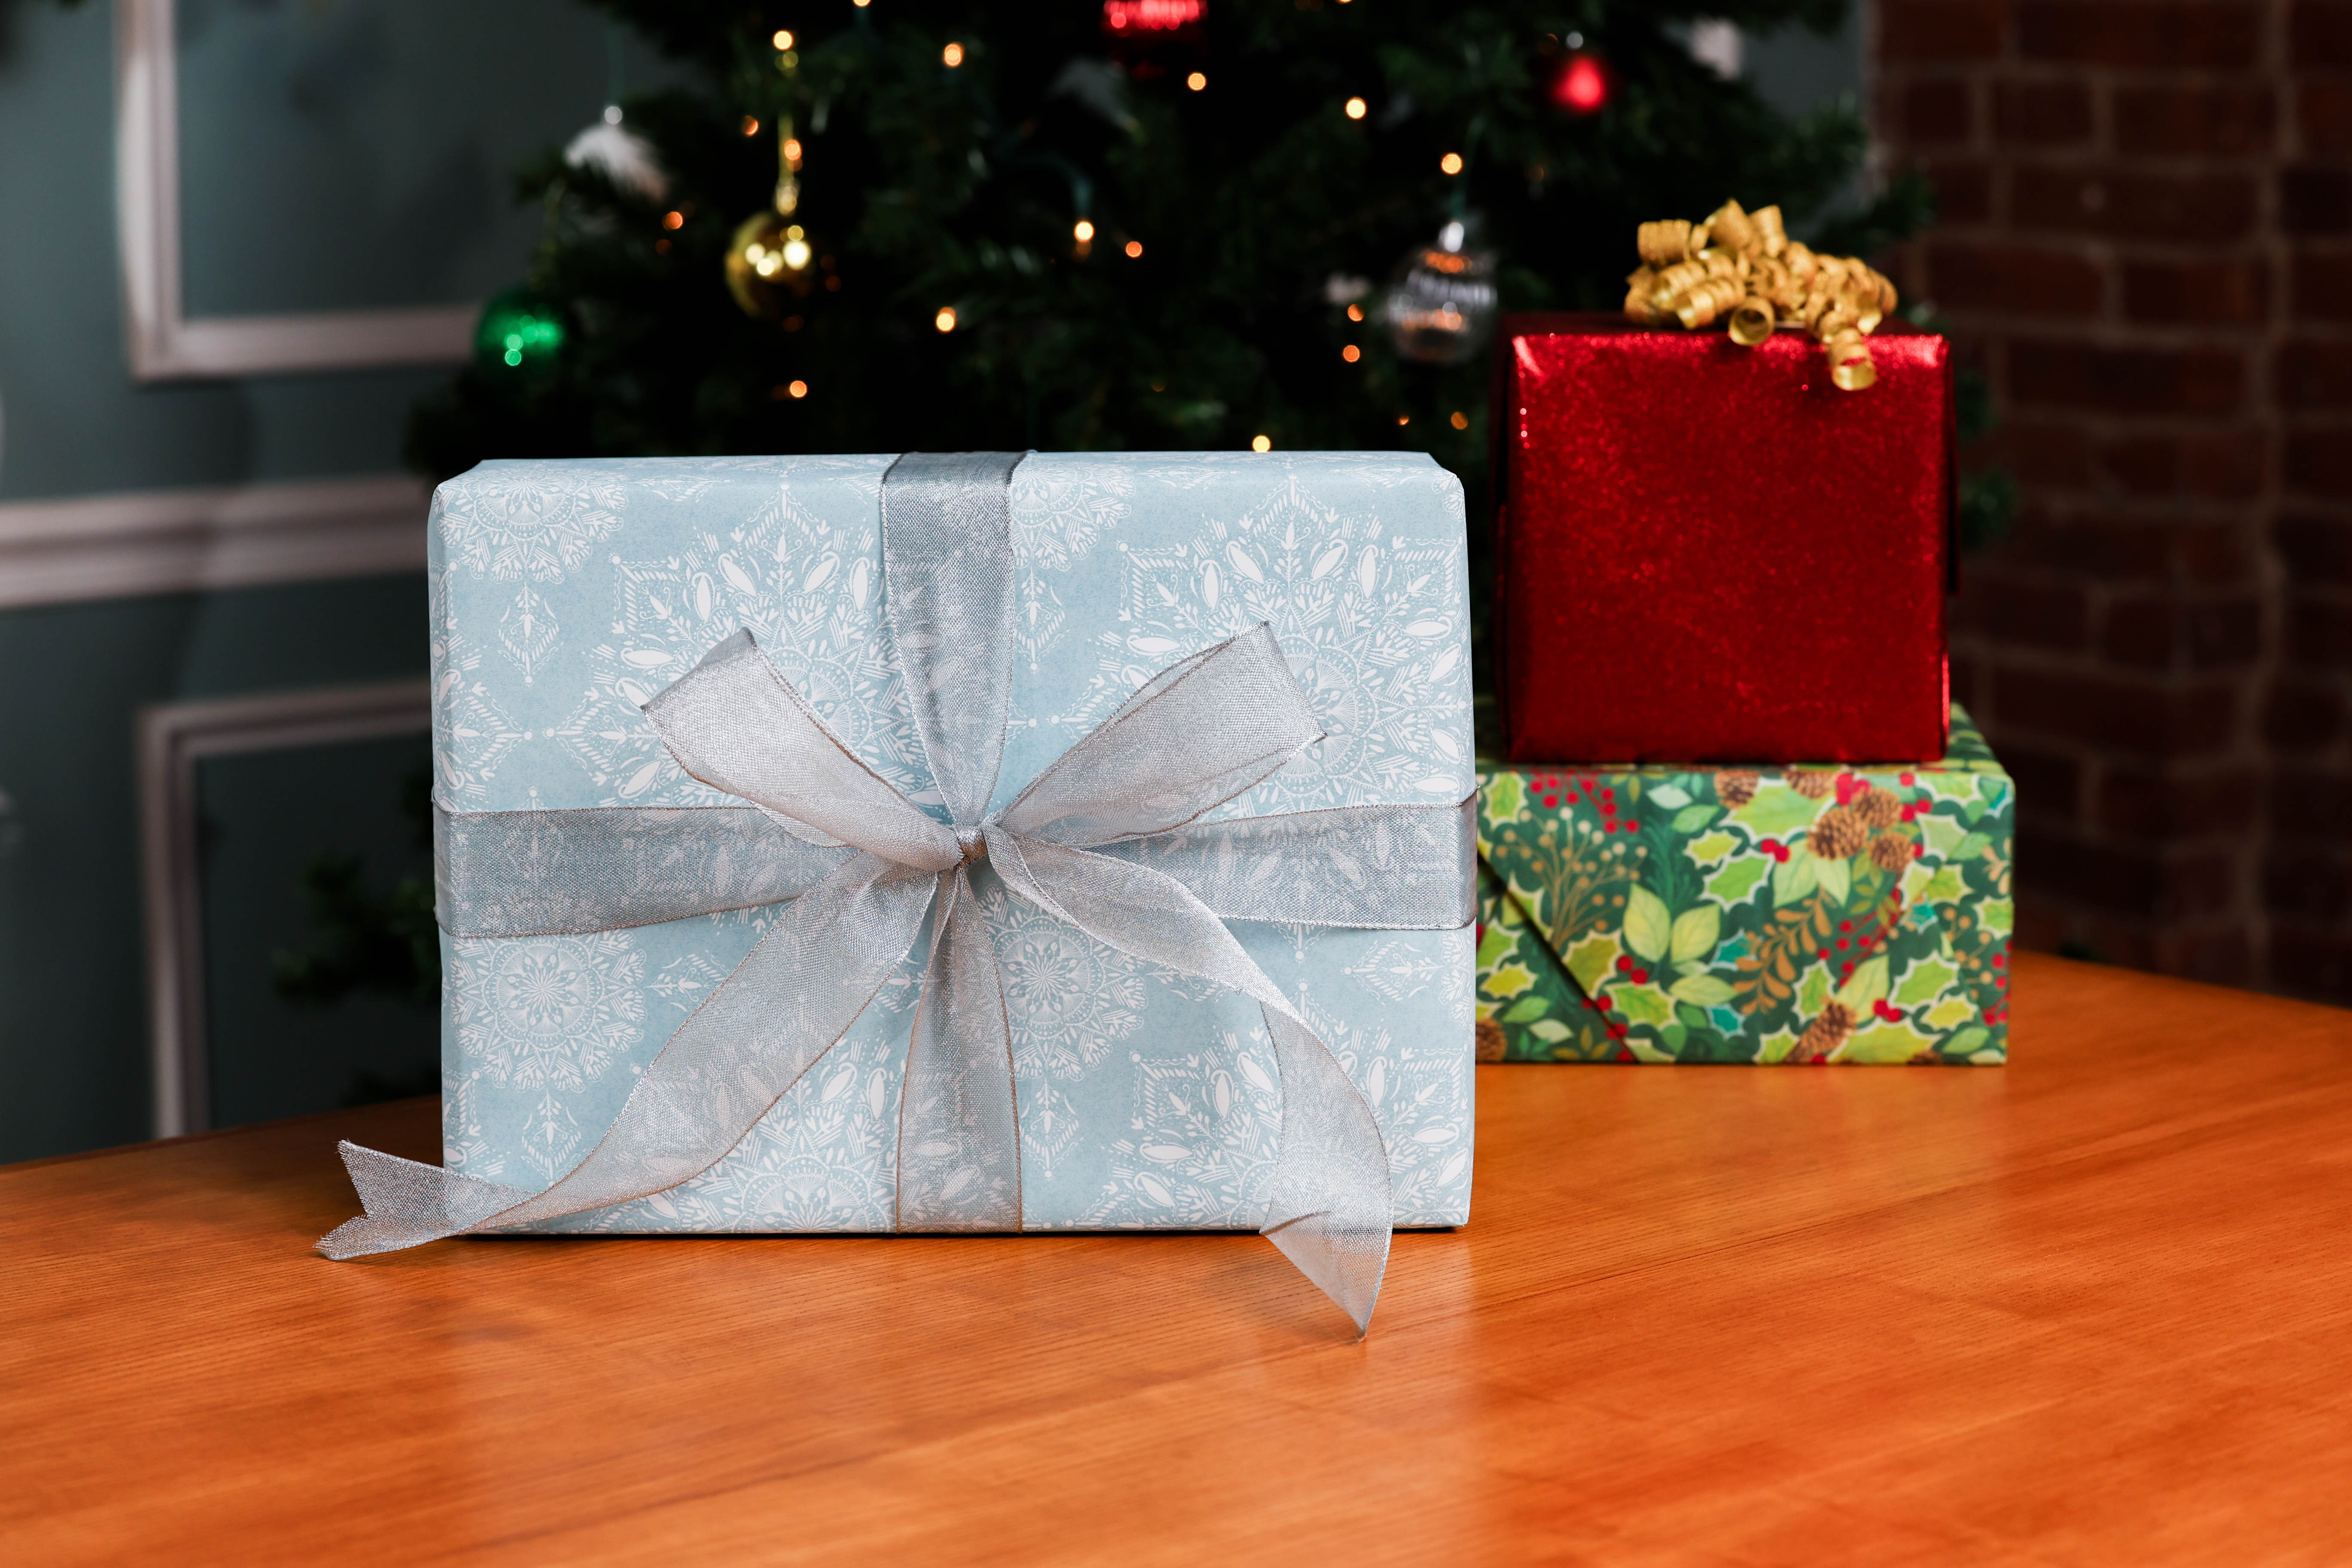 Year 3 of the gift wrap debacle #giftwrap #giftwrapping #hardtoopengif, elf on shelf ideas